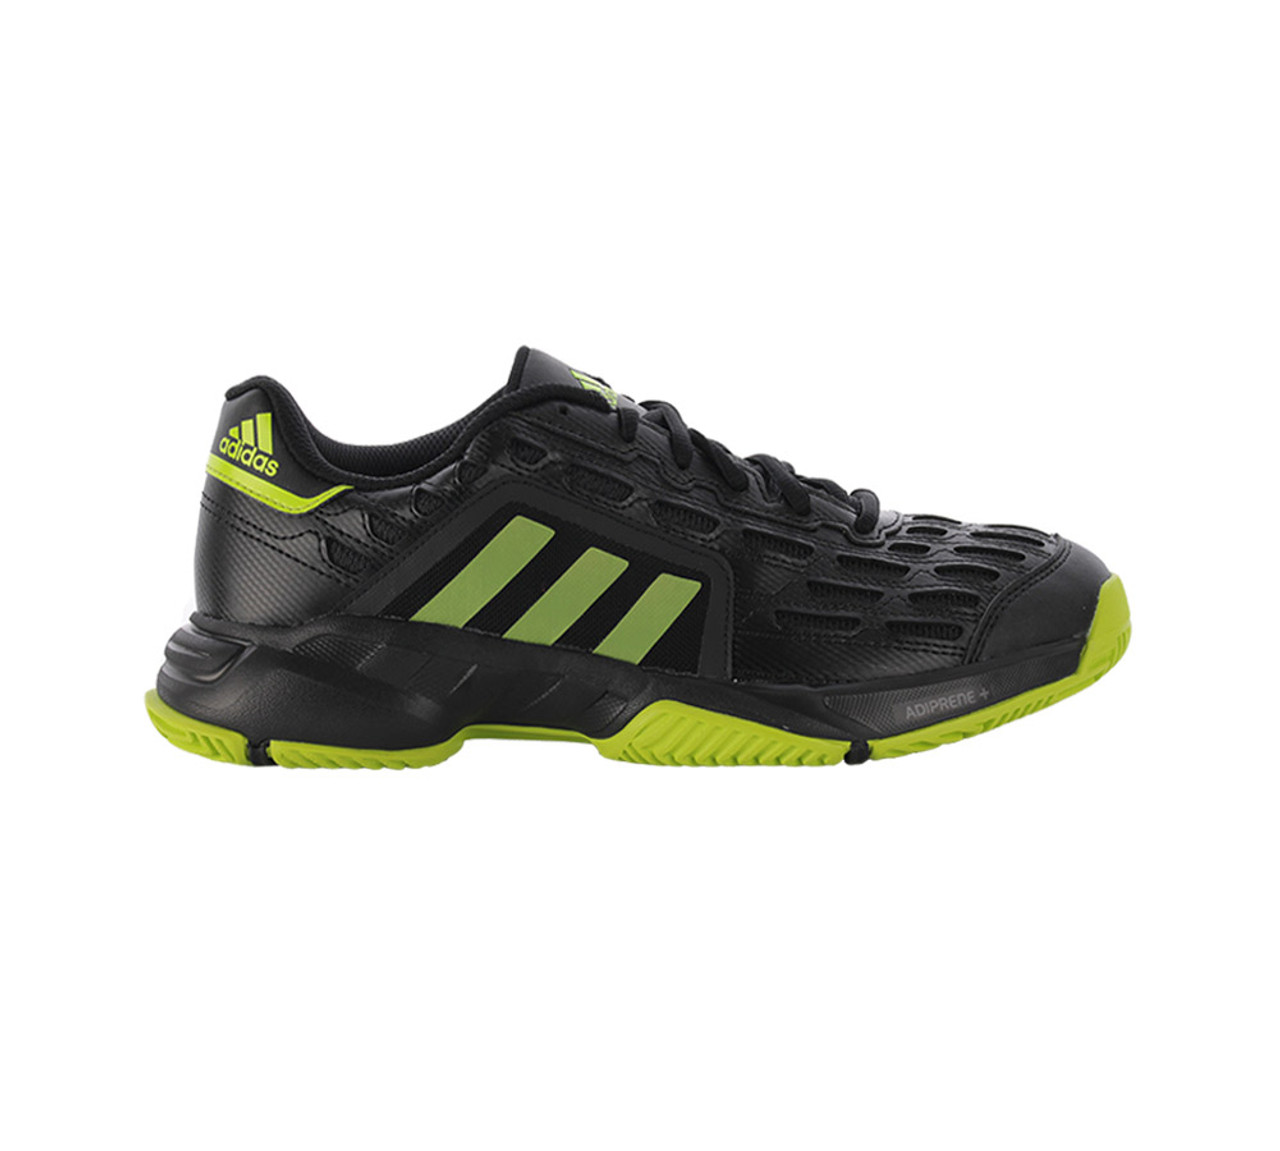 Adidas Men's Barricade 2 Tennis Shoe - Black | Discount Adidas Men's Athletic Shoes & More Shoolu.com | Shoolu.com